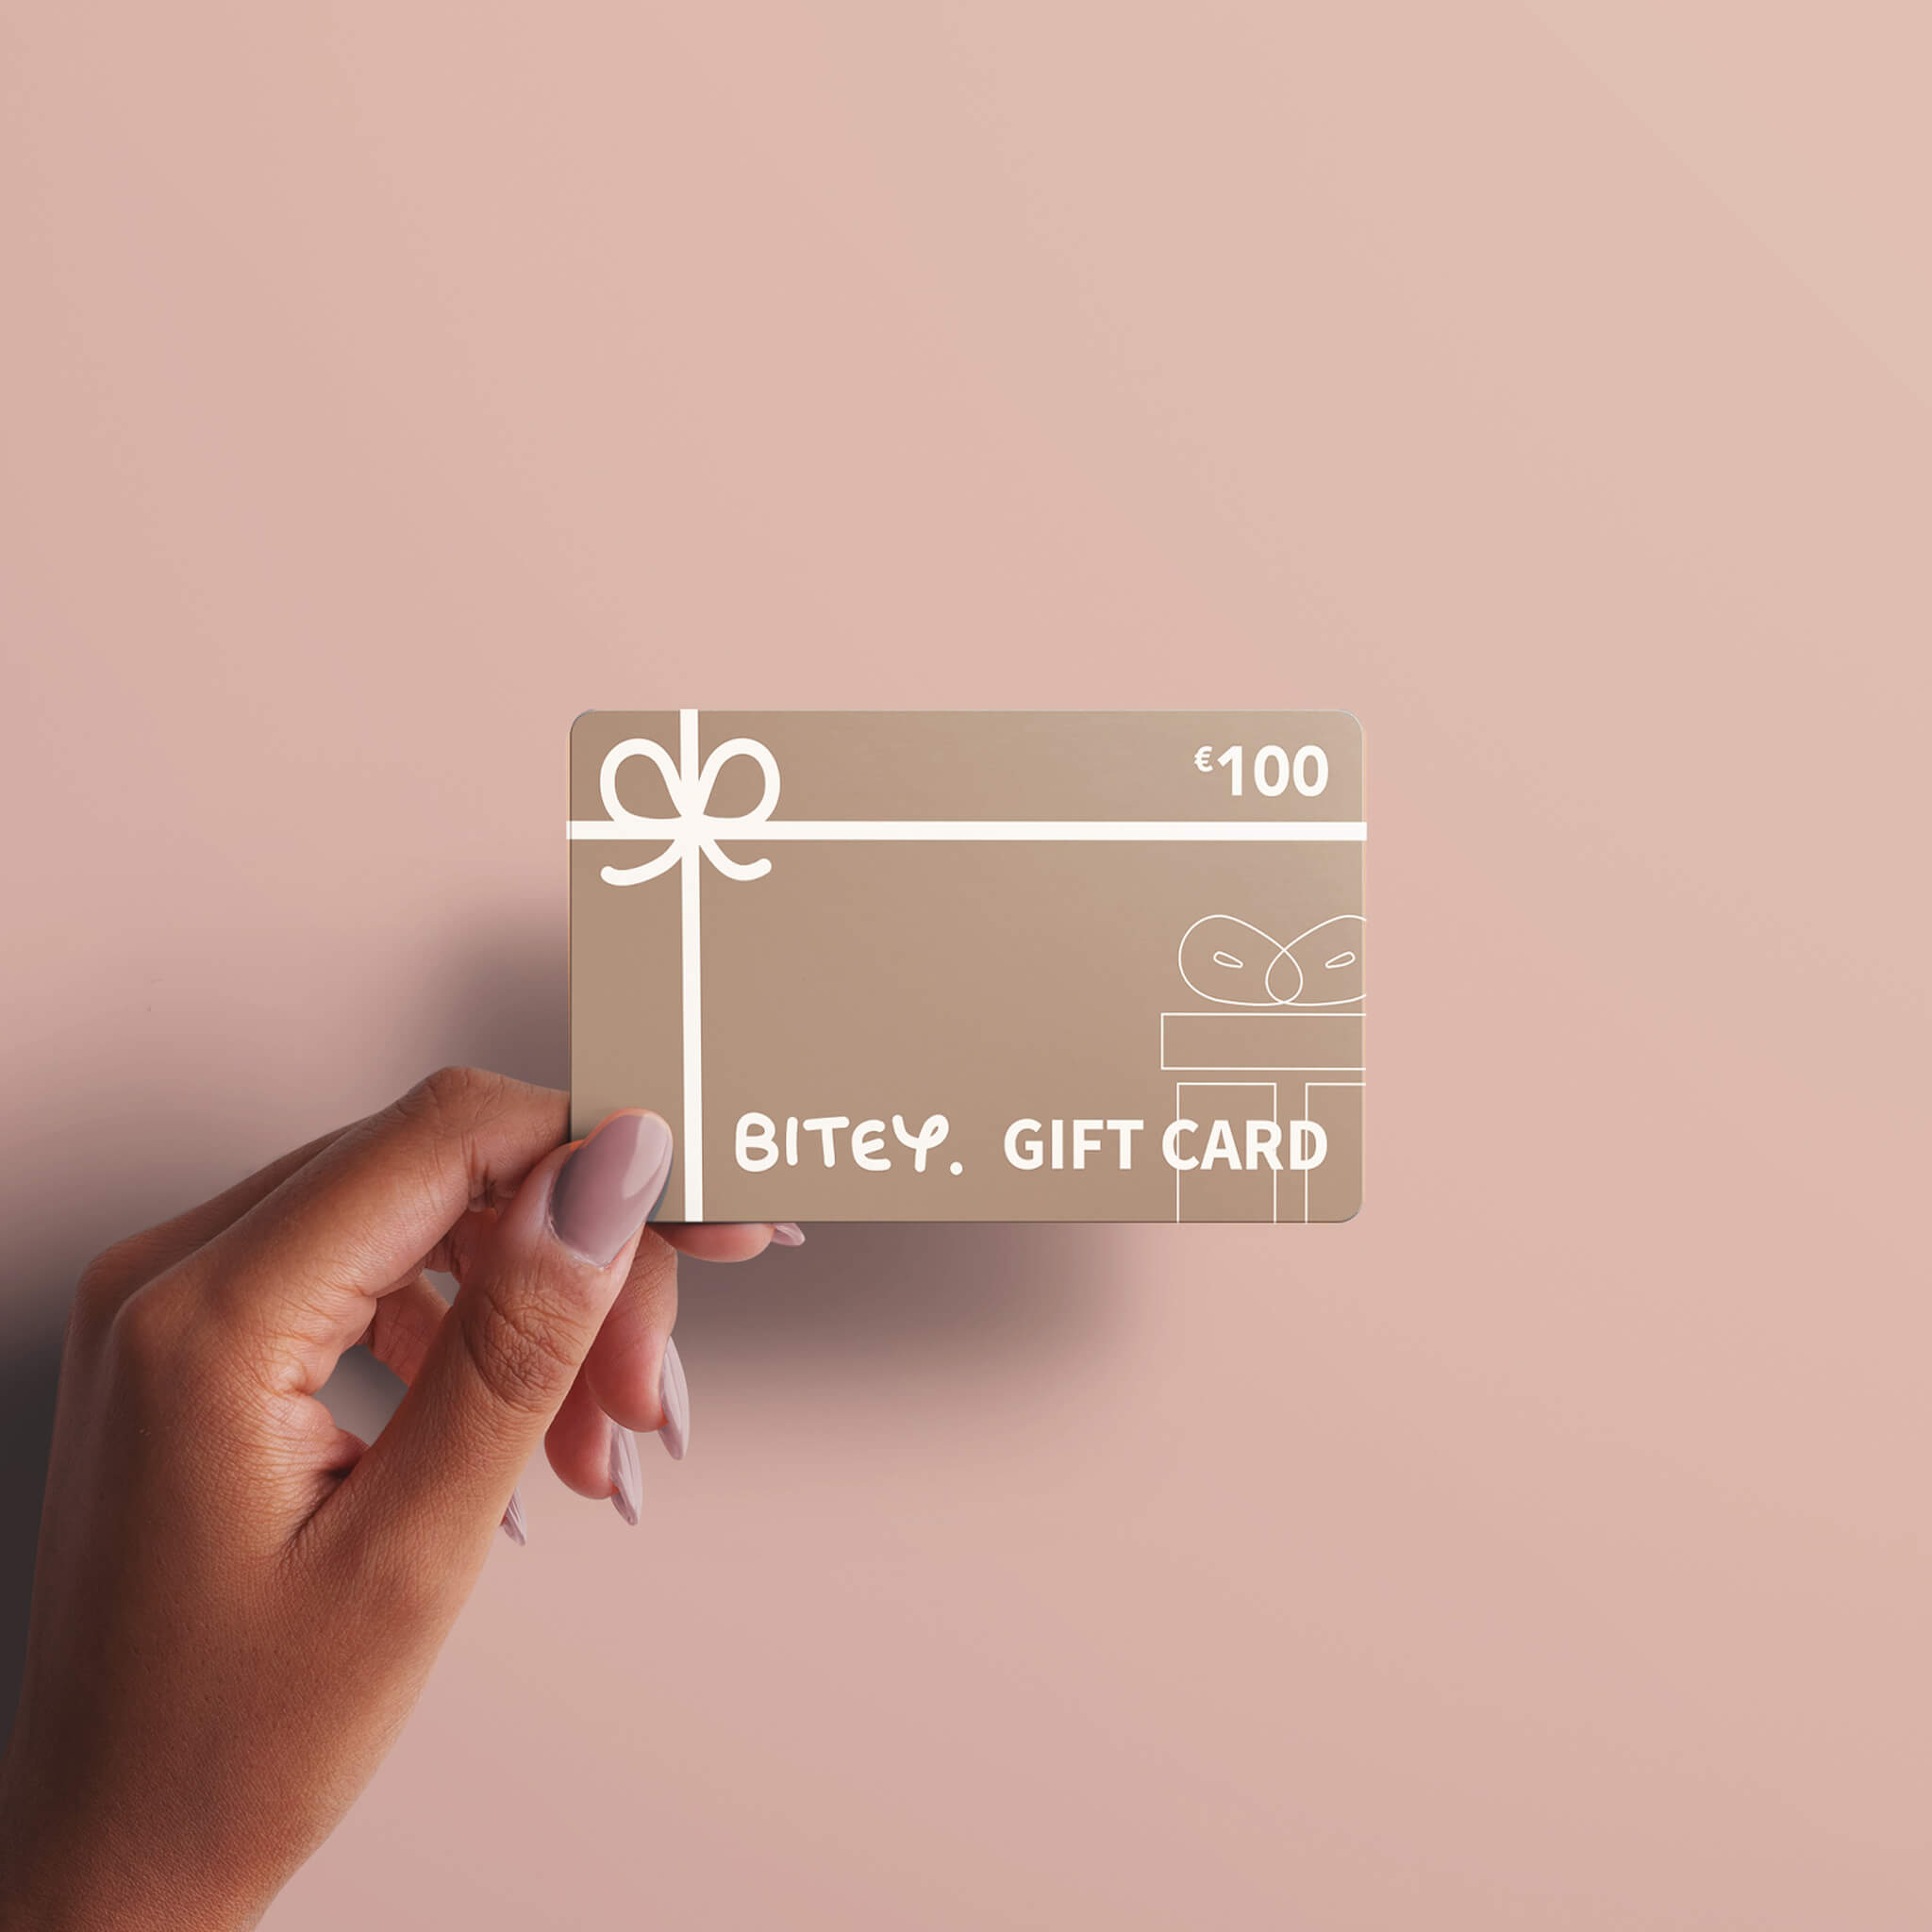 Bitey Cadeaukaart / Gift Card - €100,00